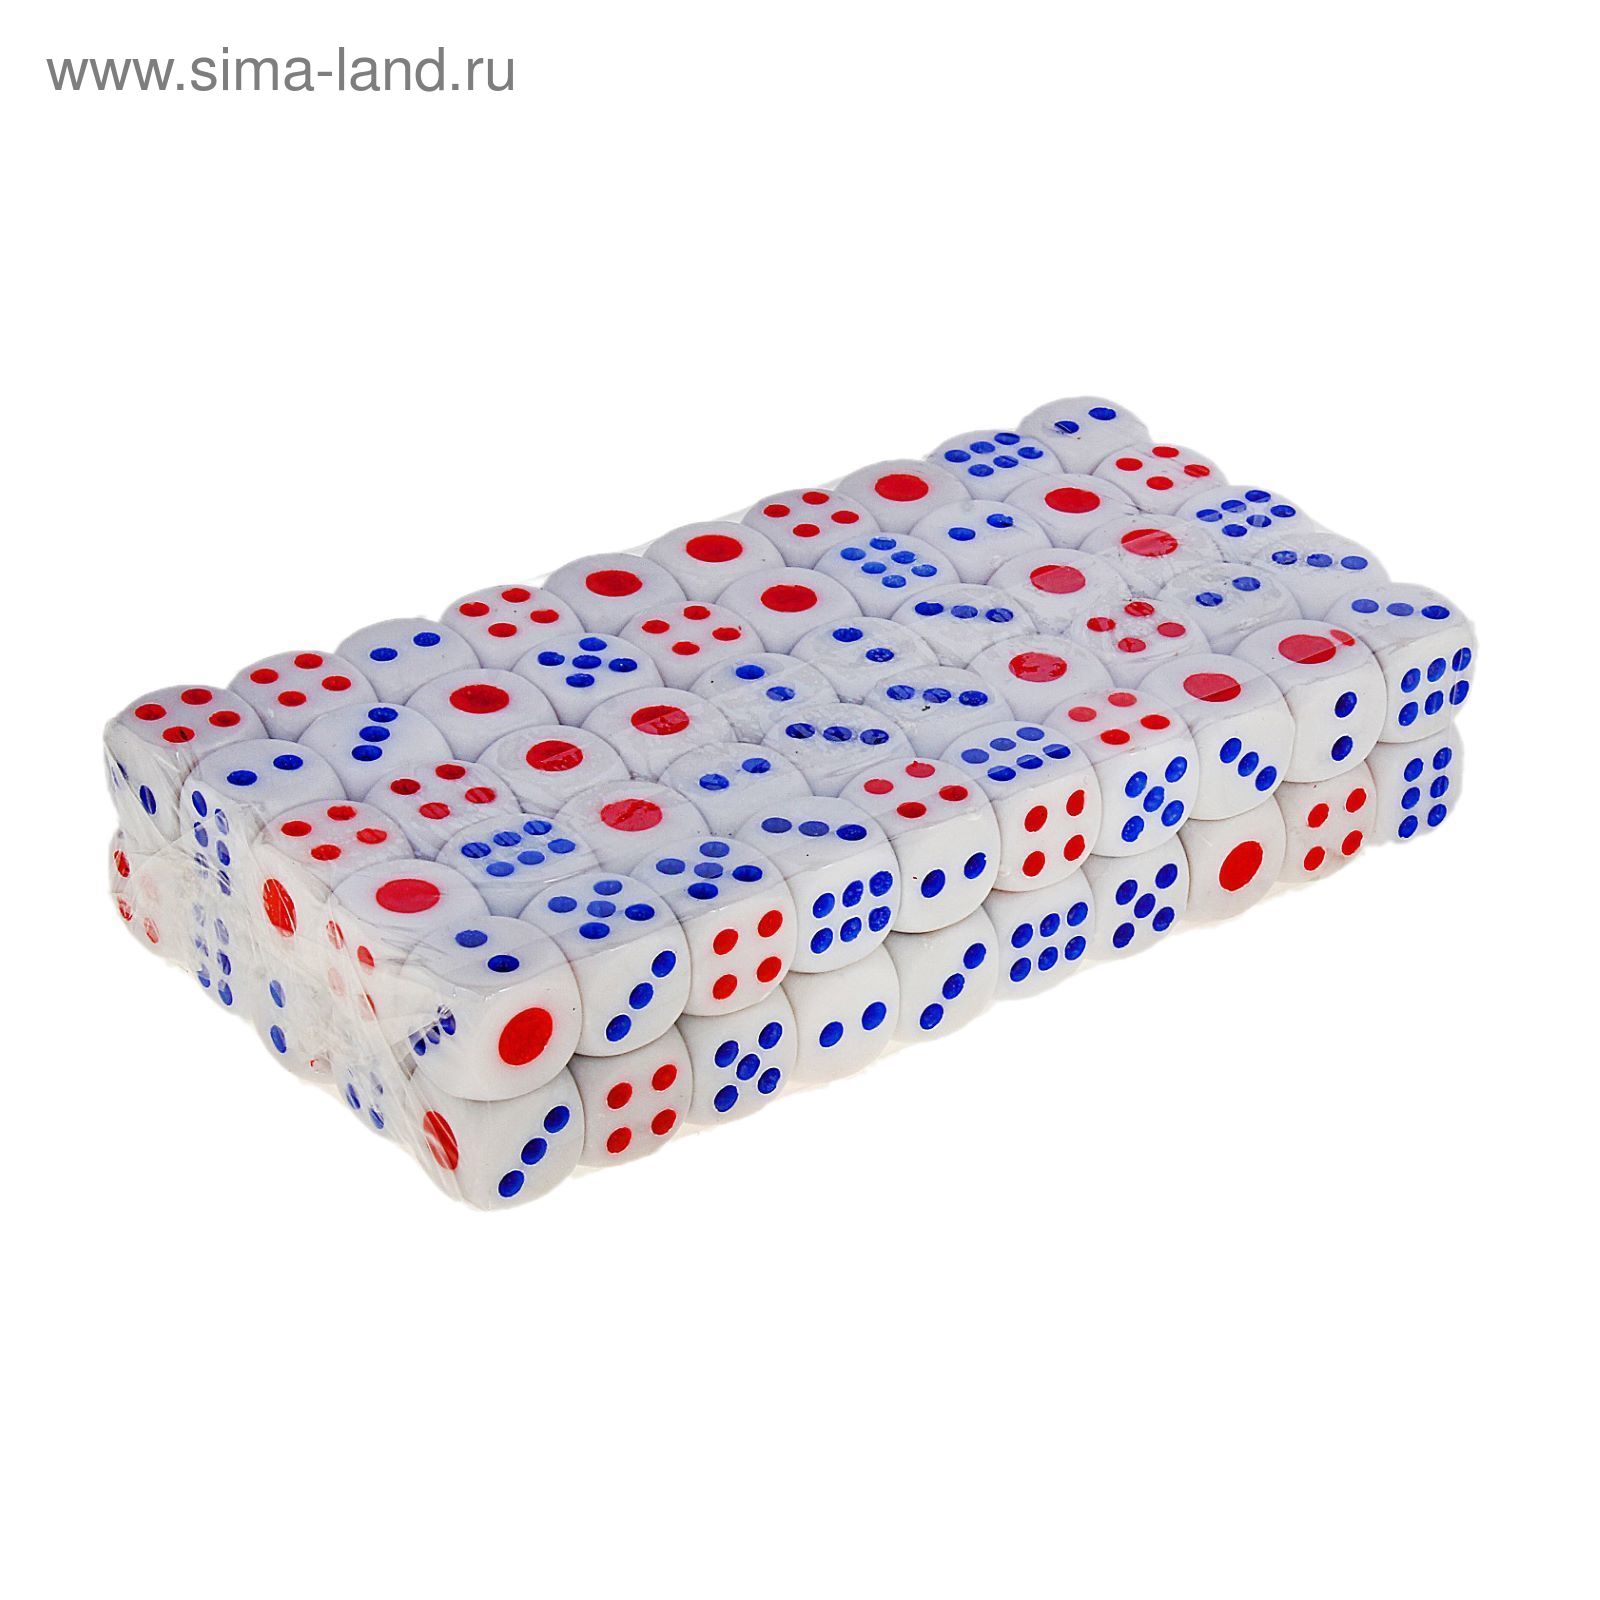 Кости игральные 1,8 × 1,8 см, белые с цветными точками, фасовка 100 шт.